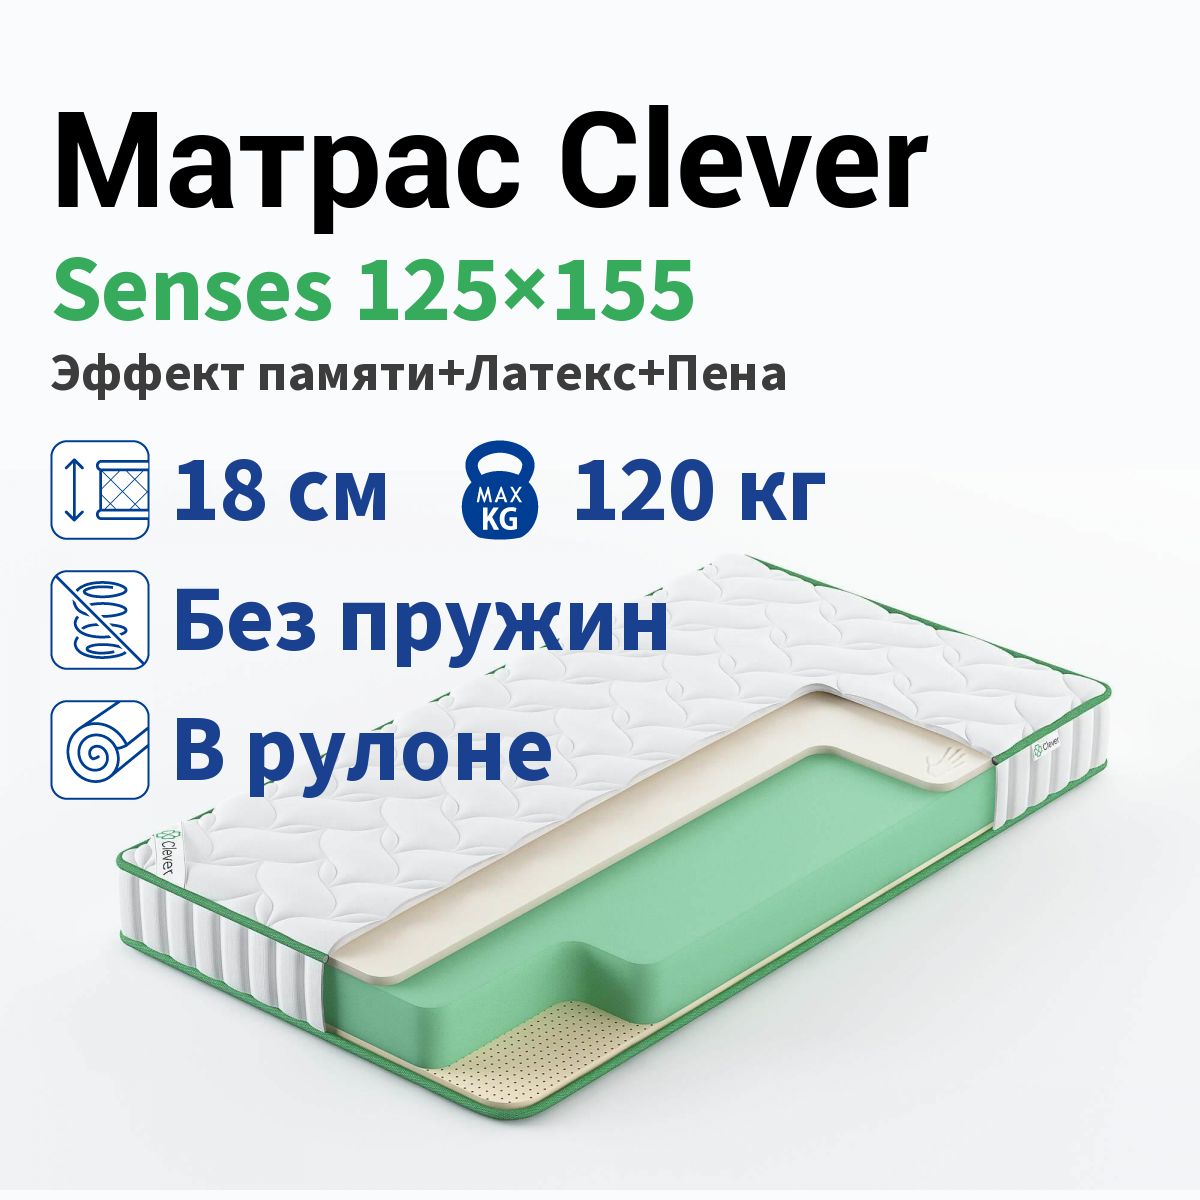 Матрас Clever Senses 125x155